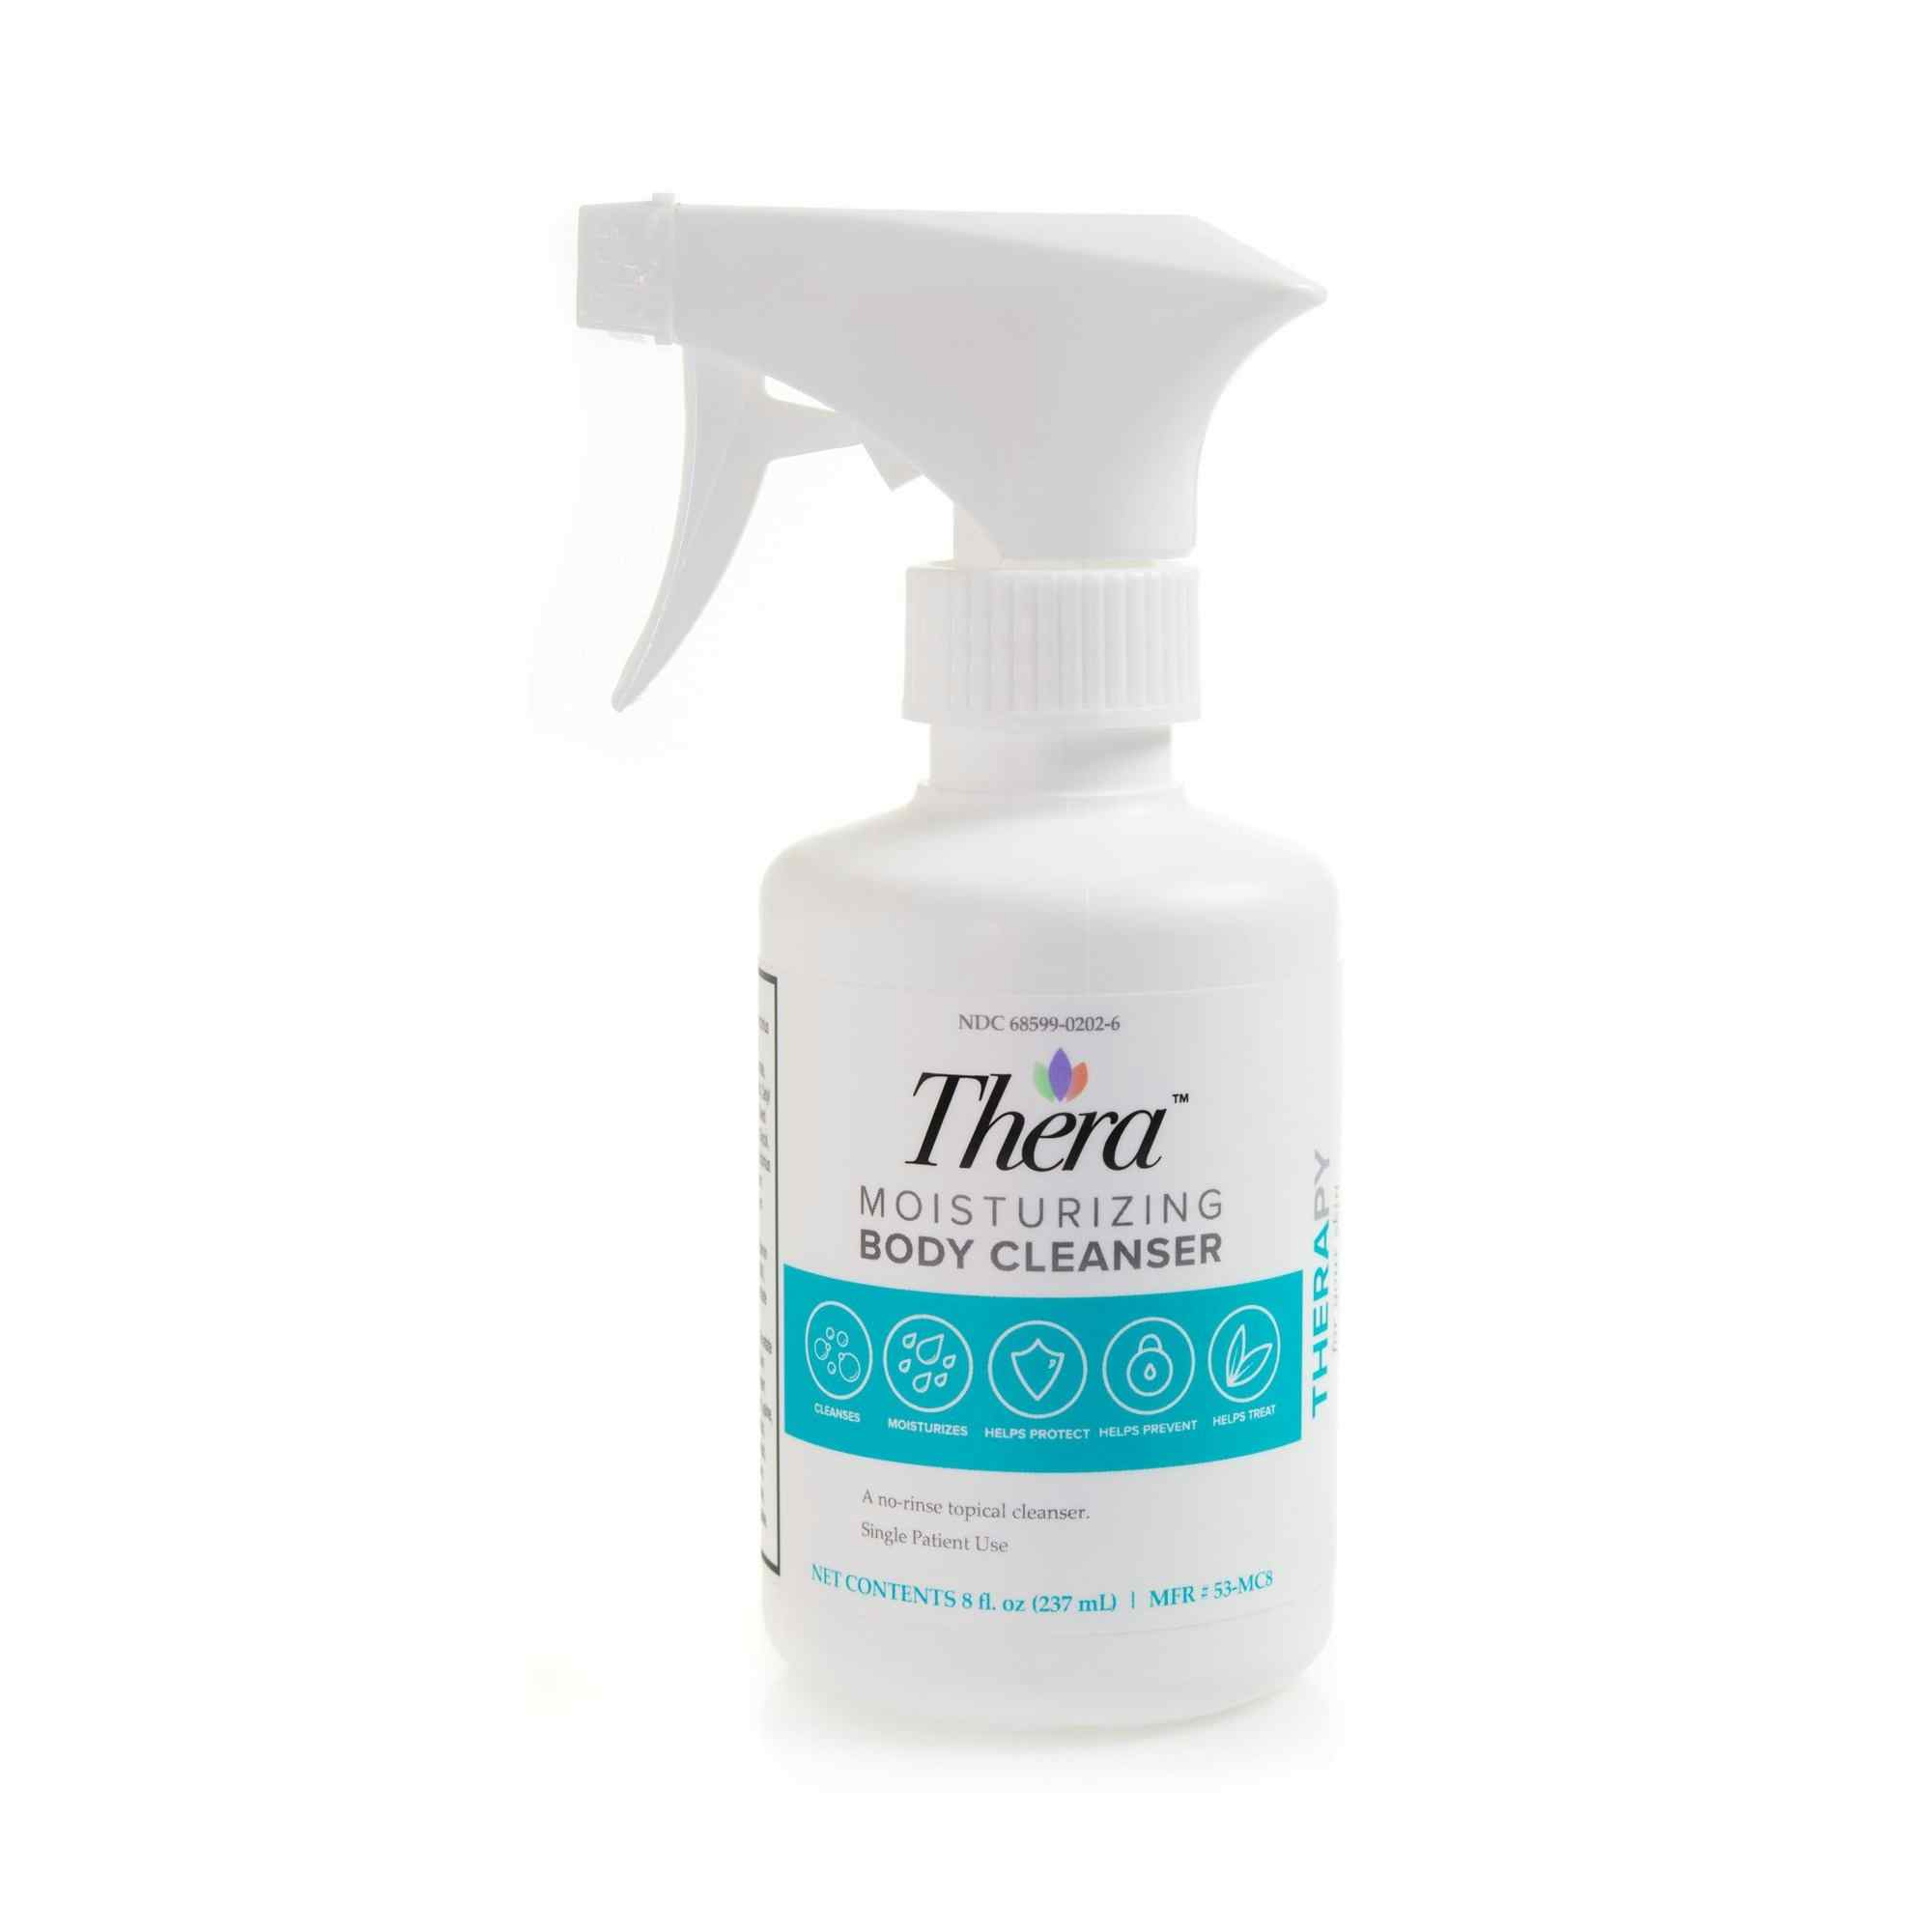 Thera Moisturizing Body Wash, Scented, 53-MC8, 8 oz. - 1 Bottle